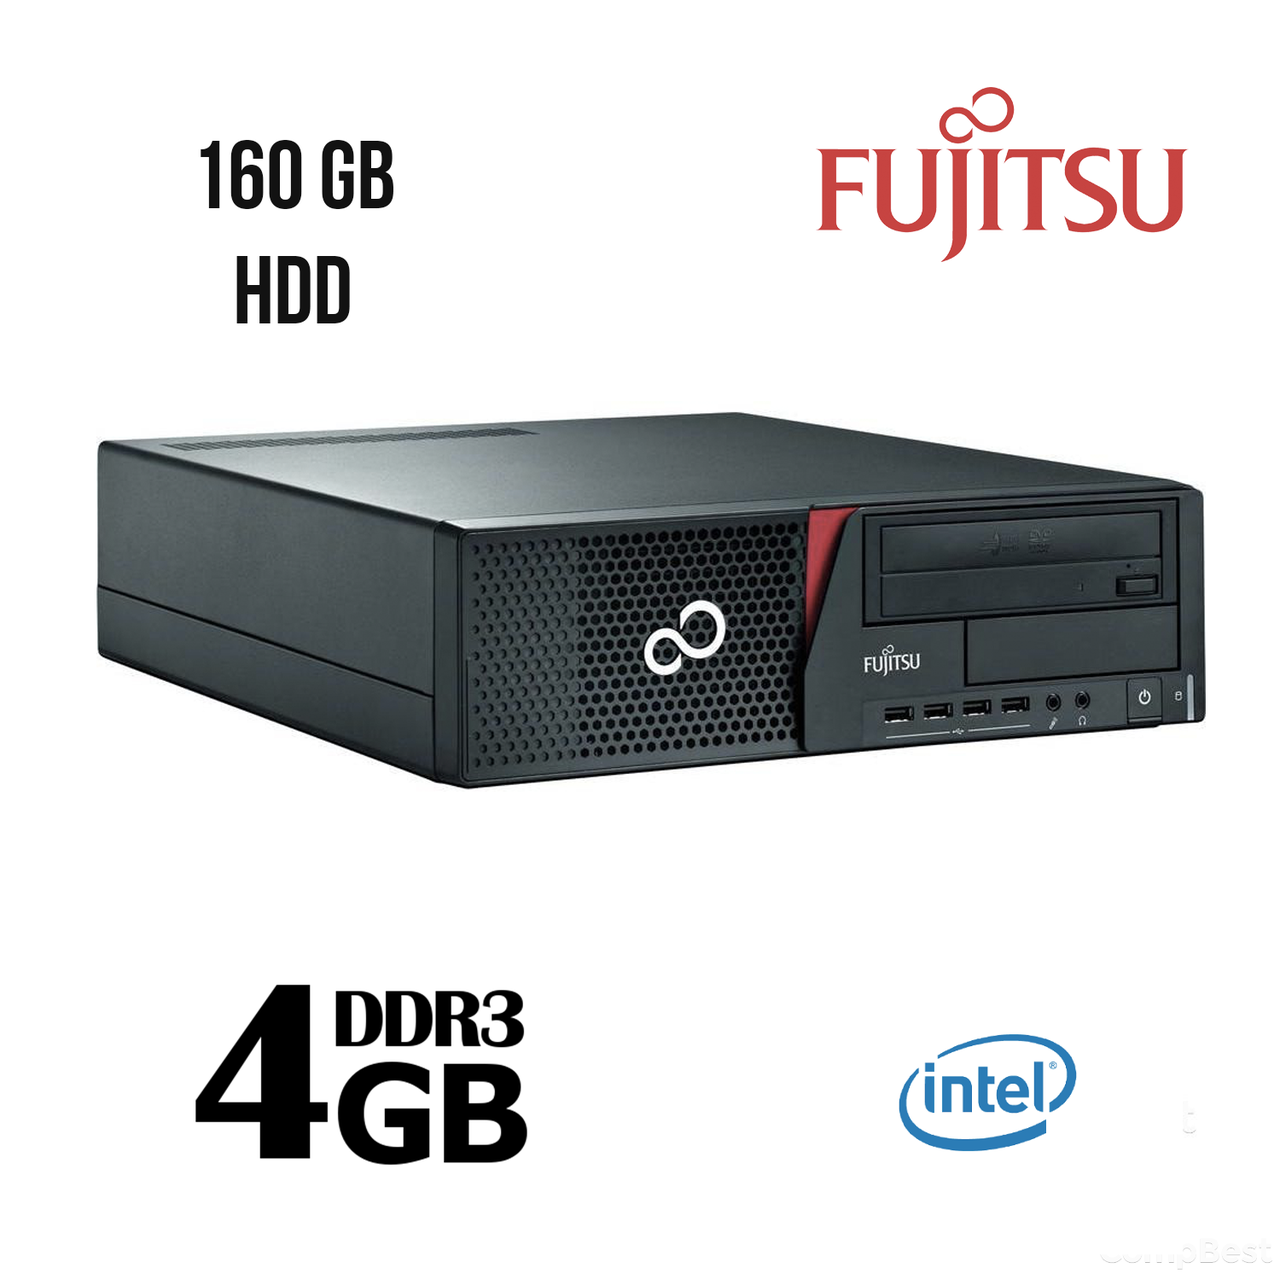 Fujitsu E700 SFF/Intel® Pentium® G840 (2(2) ядра по 2.8 GHz) / 4 GB DDR3 / 160 GB HDD